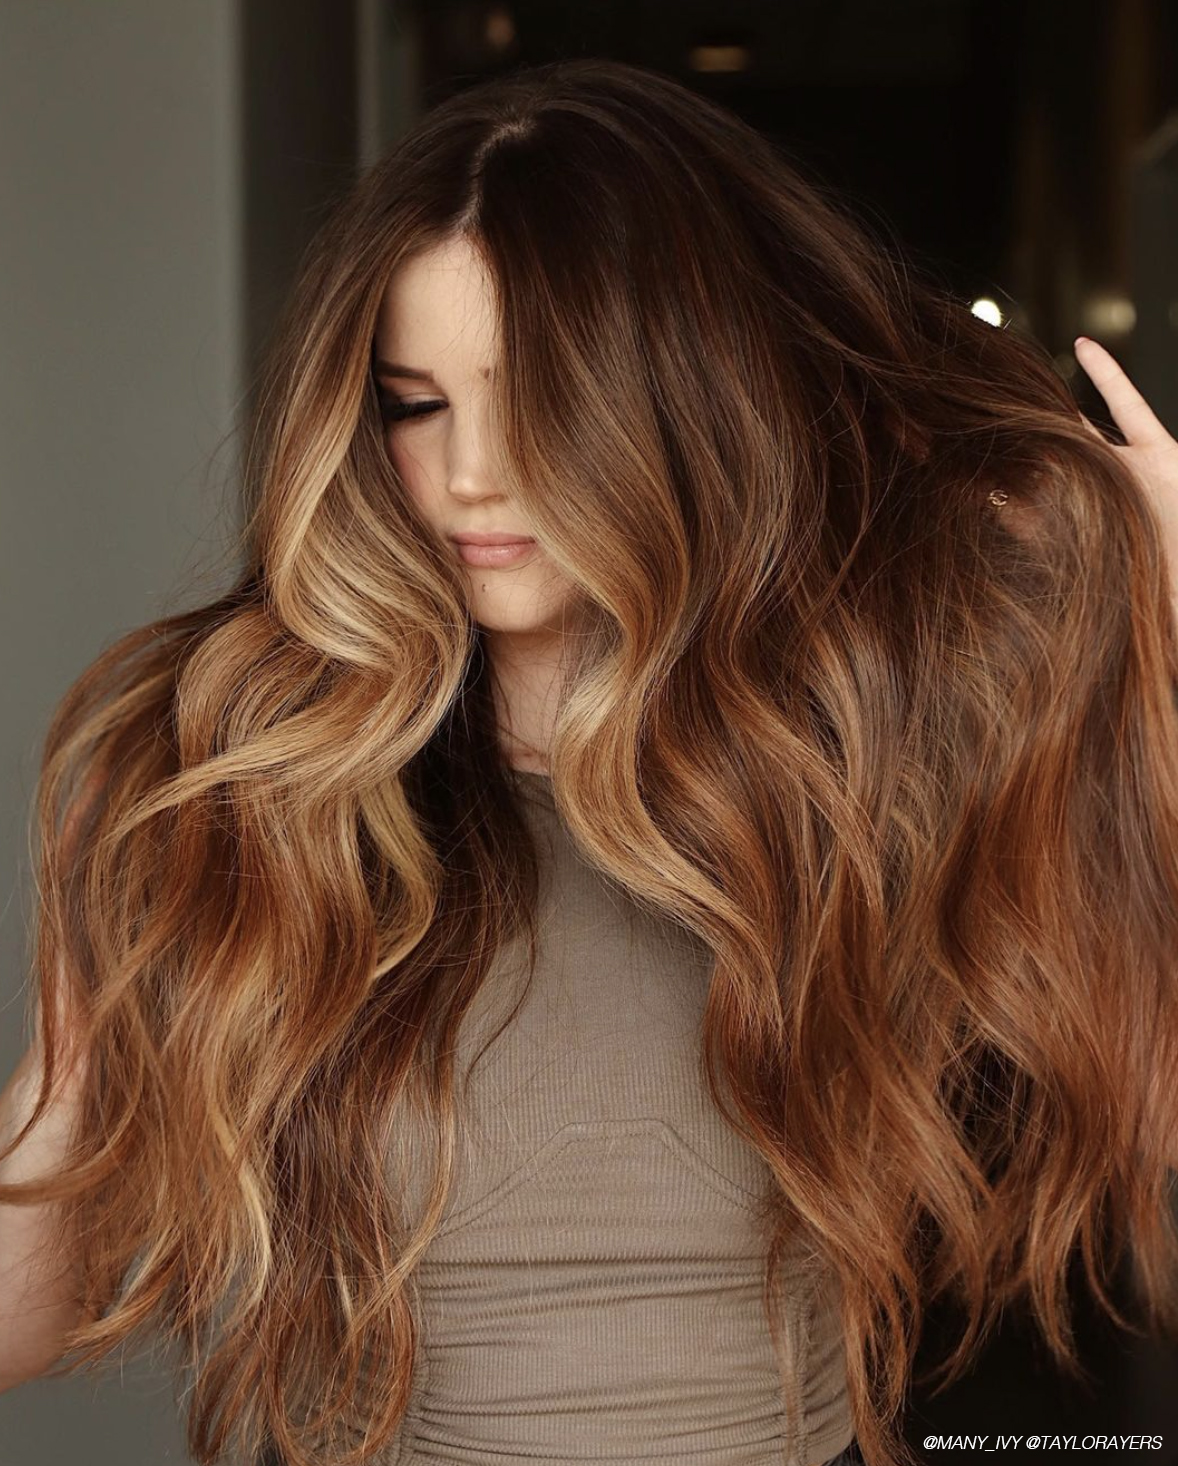 Sante Herbal Hair Colour - Chestnut Brown